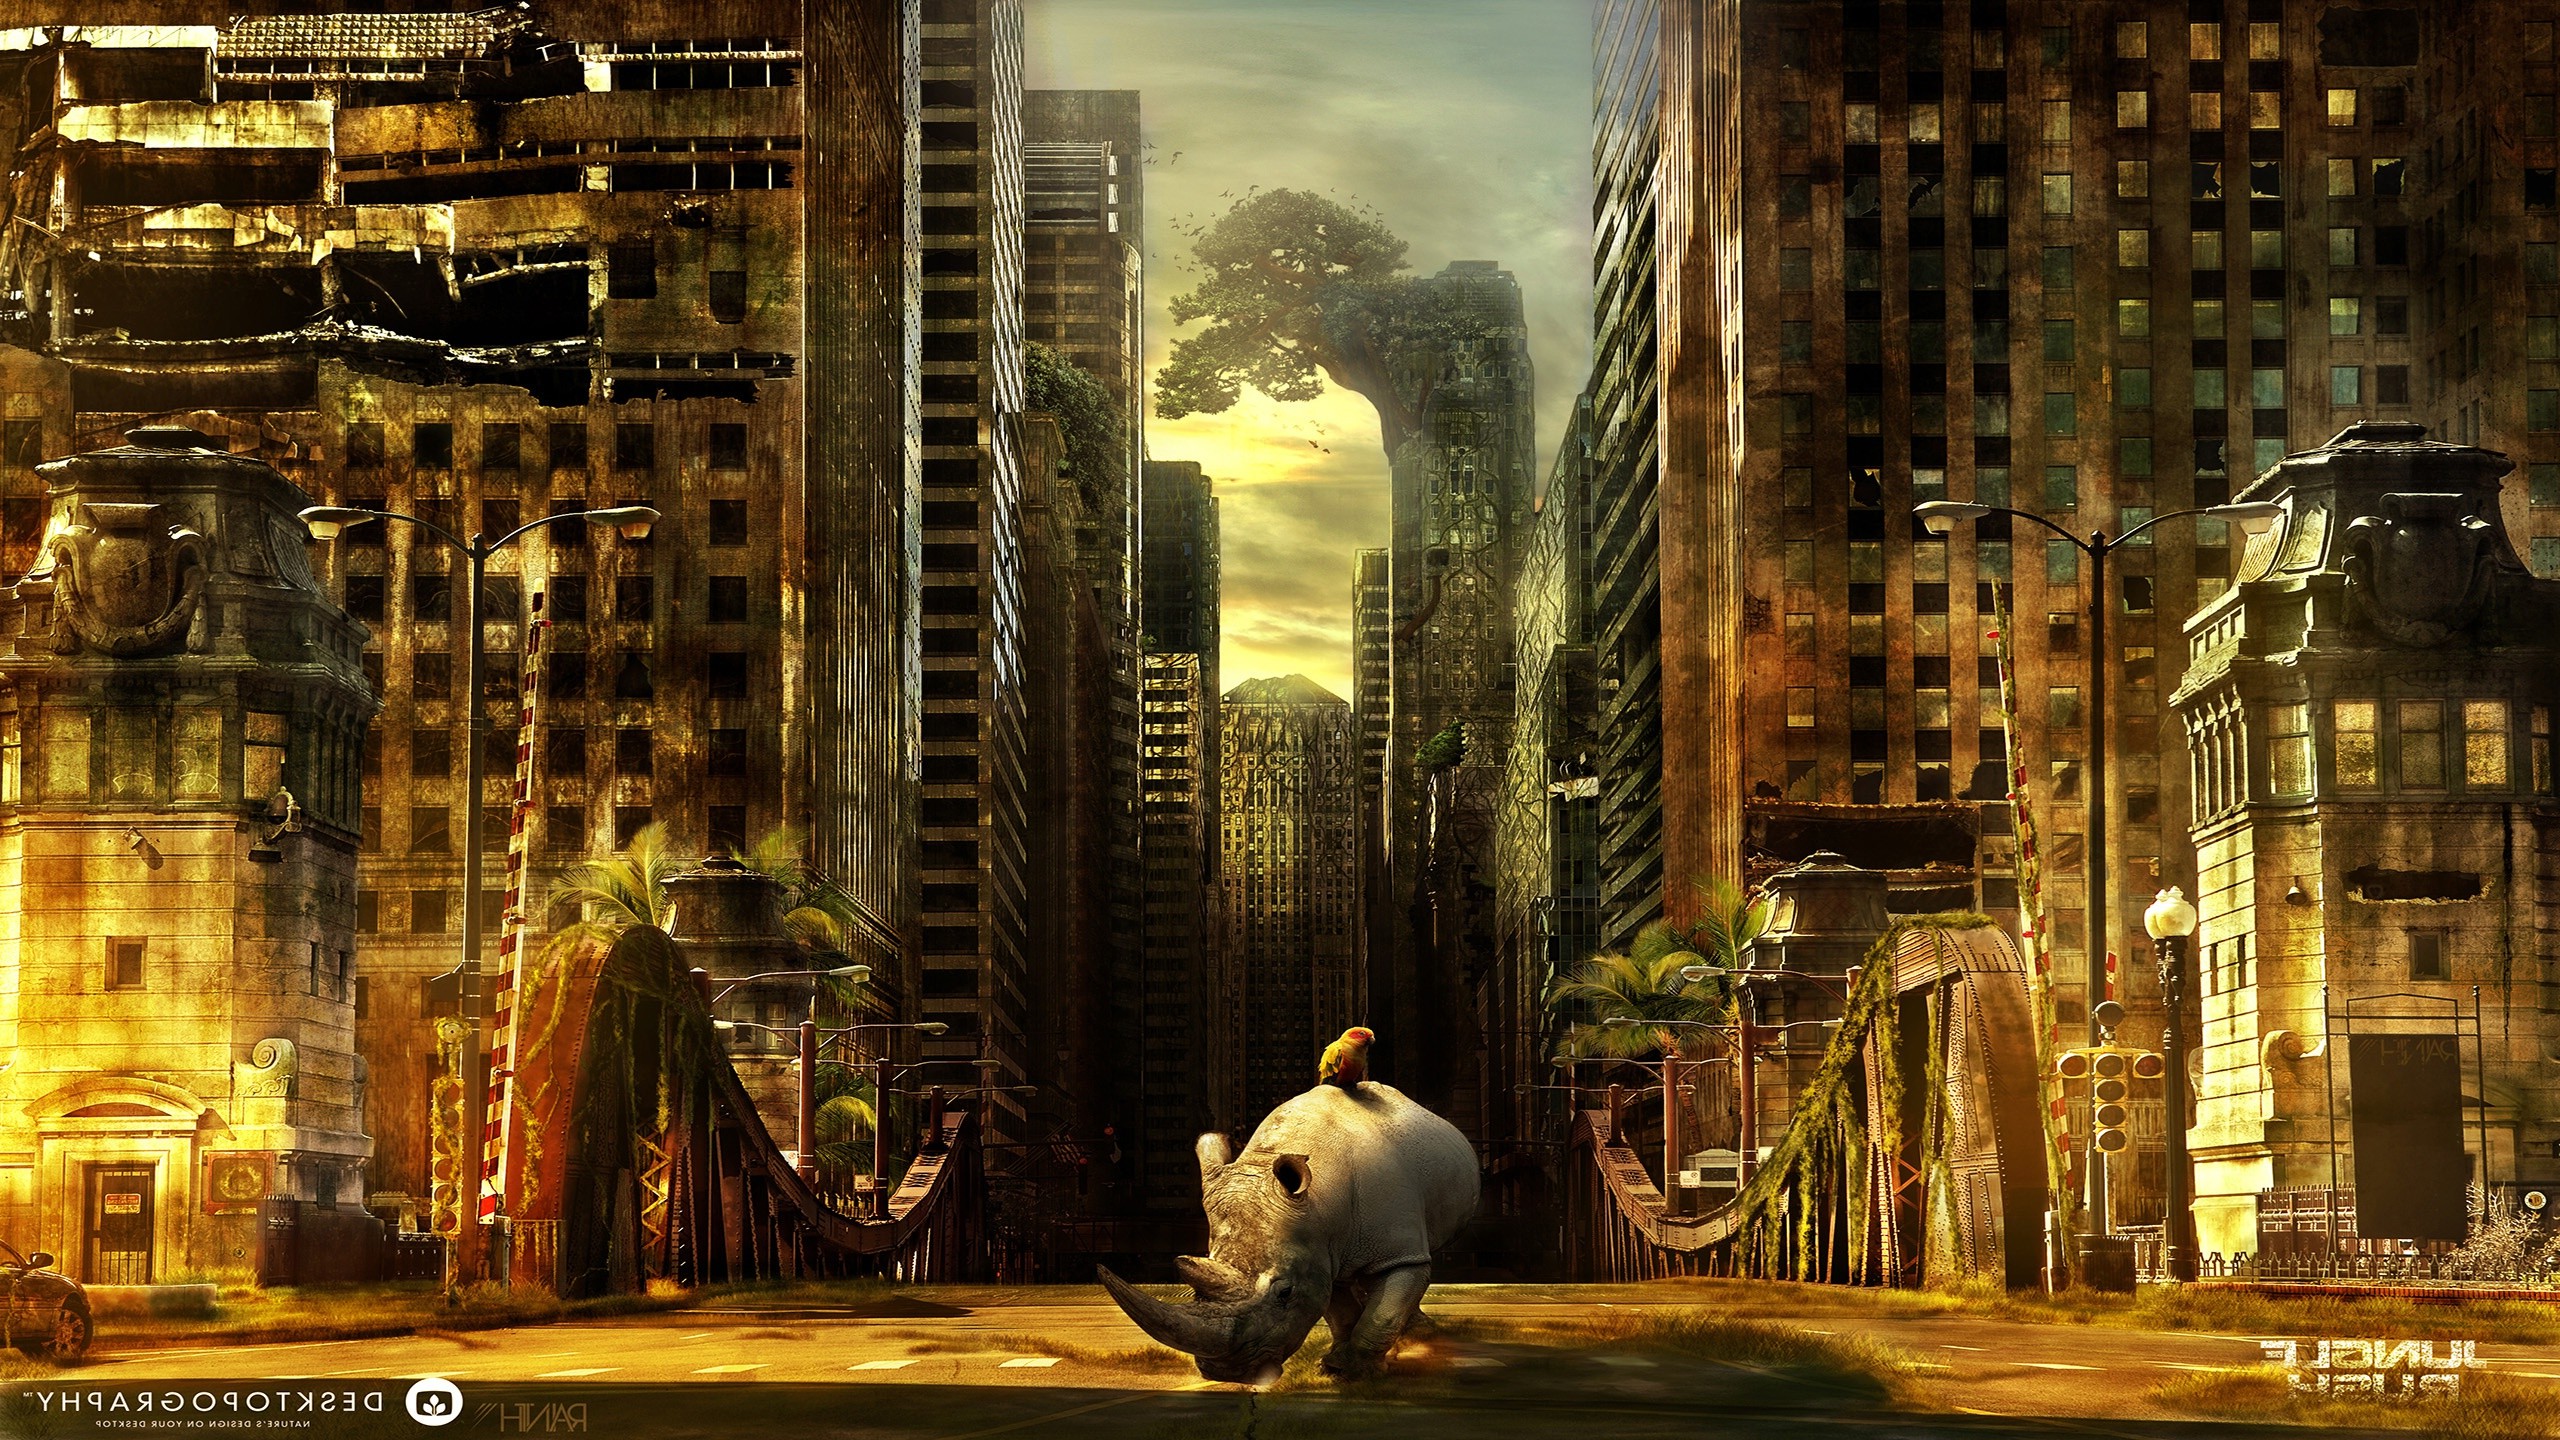 Desktopography, Nature, Animals, Rhino, Cityscape, Ruin, Digital Art Wallpaper